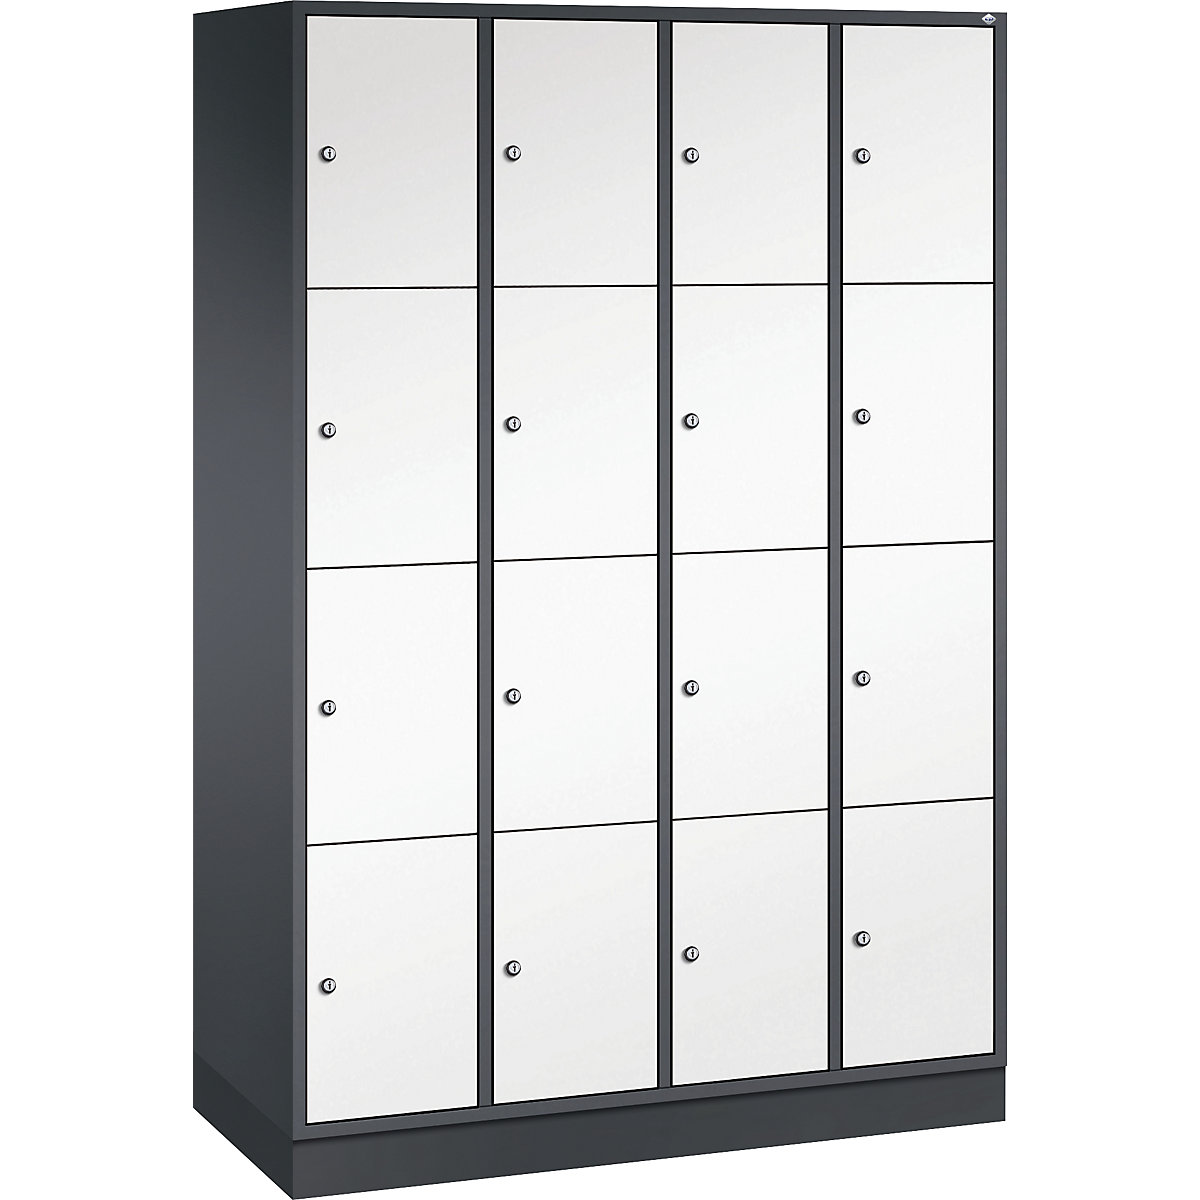 Vestiaire multicases en acier INTRO, casiers hauteur 435 mm – C+P, l x p 1220 x 500 mm, 16 casiers, corps gris noir, portes blanc pur-12